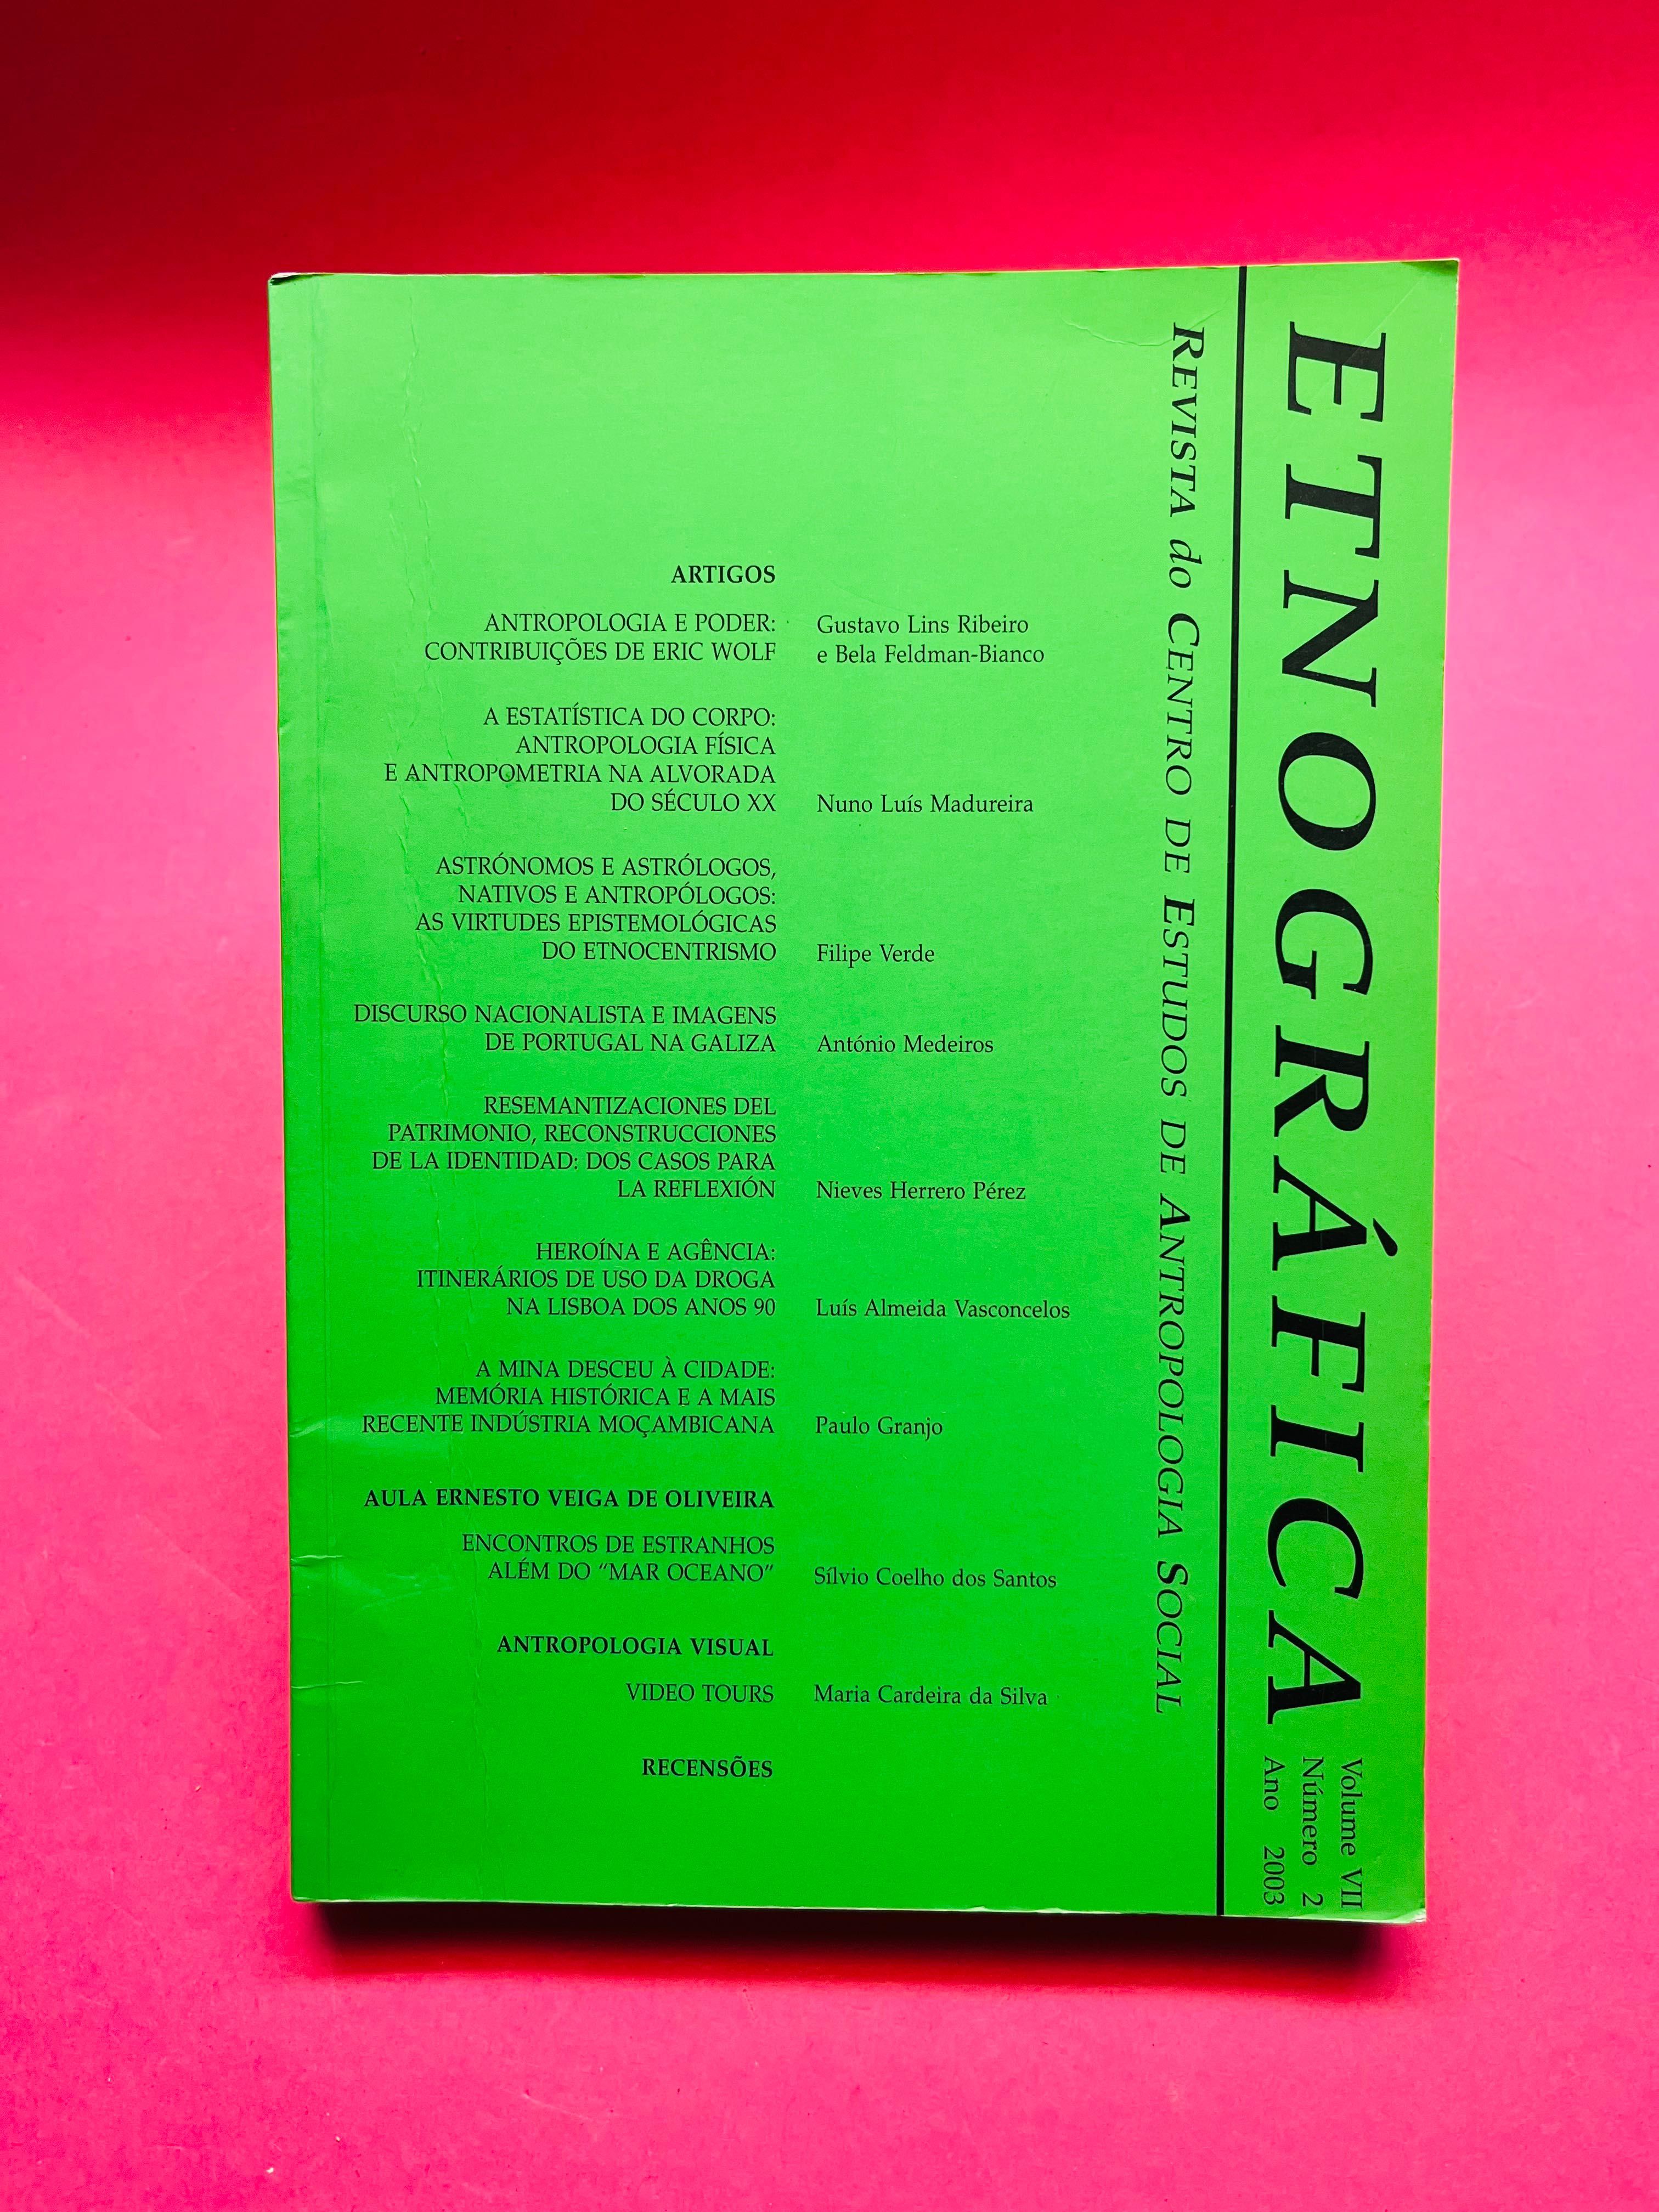 Etnográfica - Revista de Antropologia Social